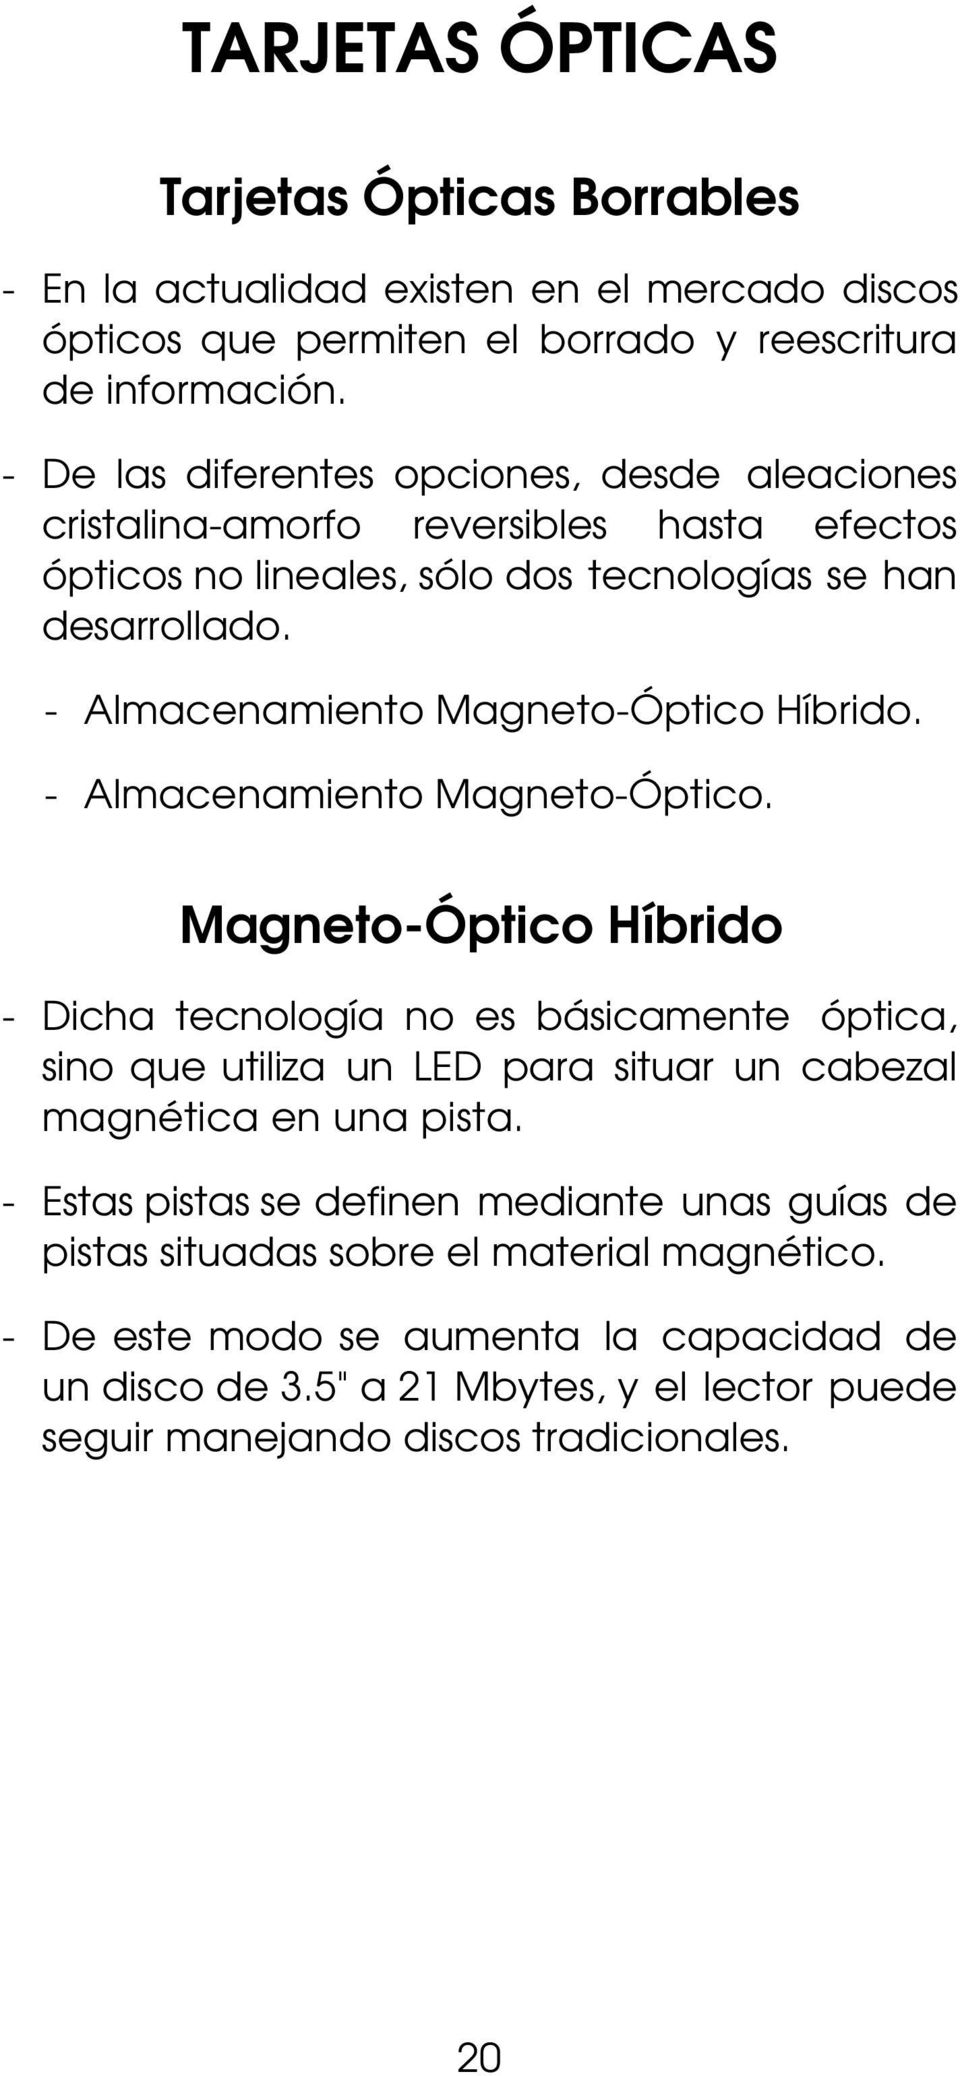 - Almacenamiento Magneto-Óptico Híbrido. - Almacenamiento Magneto-Óptico.